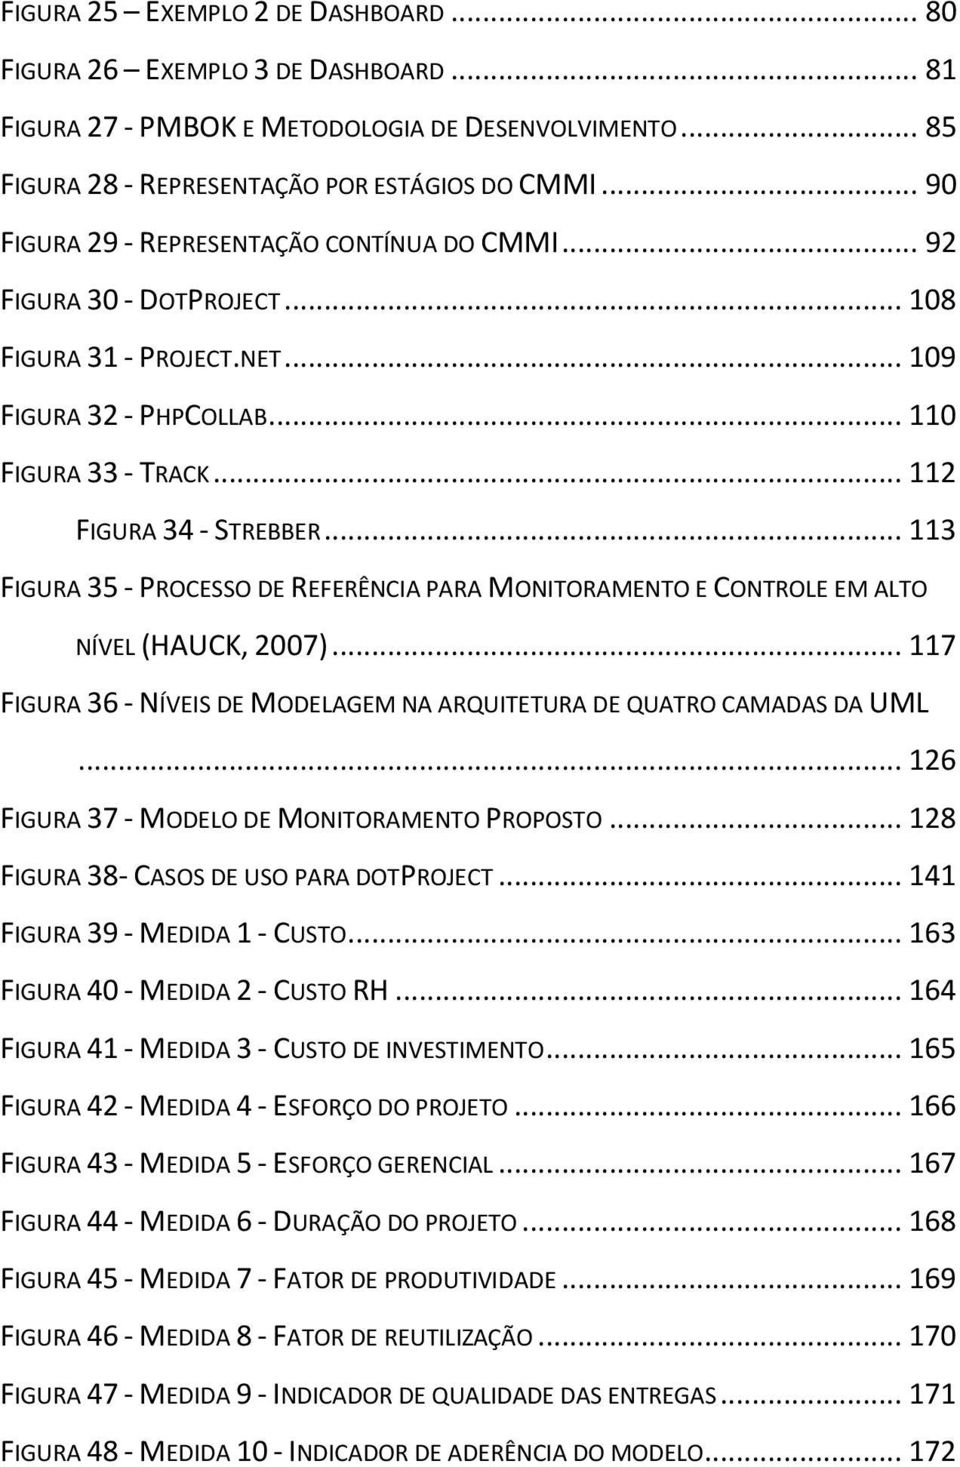 .. 113 FIGURA 35 - PROCESSO DE REFERÊNCIA PARA MONITORAMENTO E CONTROLE EM ALTO NÍVEL (HAUCK, 2007)... 117 FIGURA 36 - NÍVEIS DE MODELAGEM NA ARQUITETURA DE QUATRO CAMADAS DA UML.